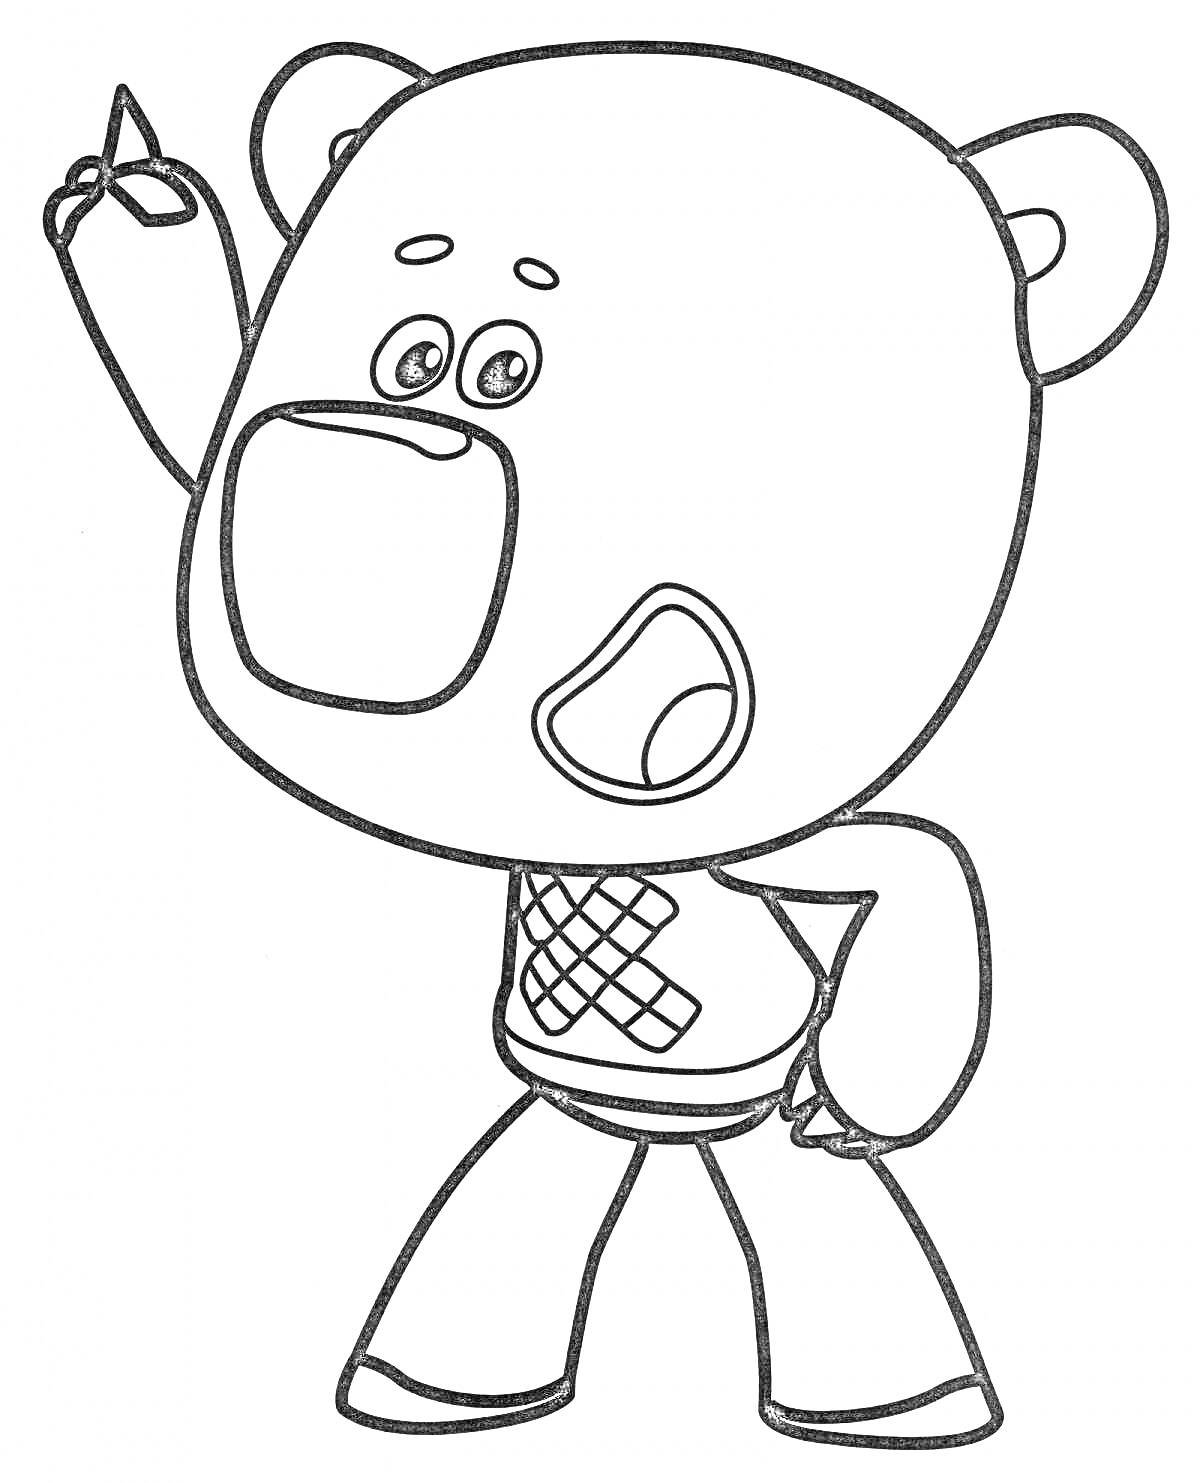 Раскраска Медведь Кеша с поднятой рукой